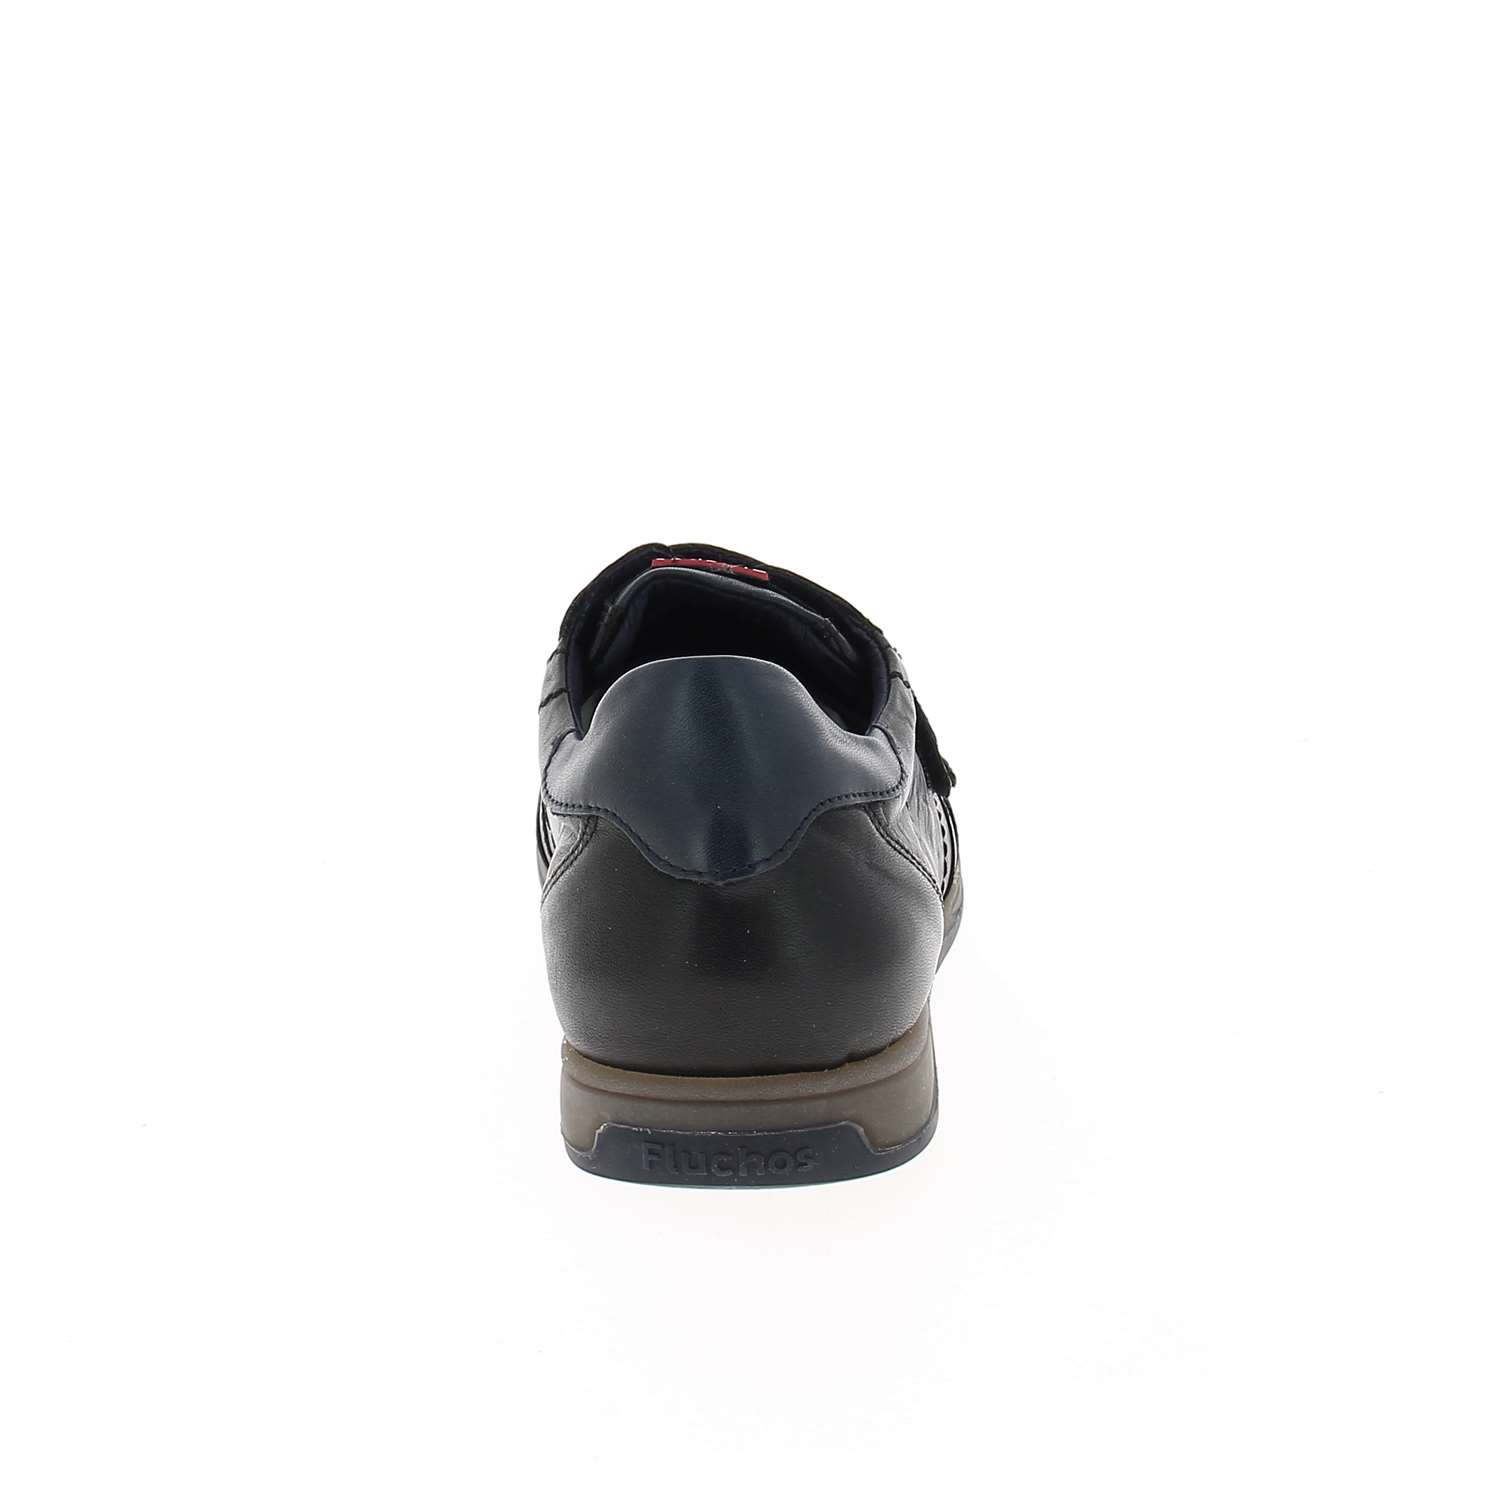 04 - FLUMAVEL - FLUCHOS - Chaussures à lacets - Cuir